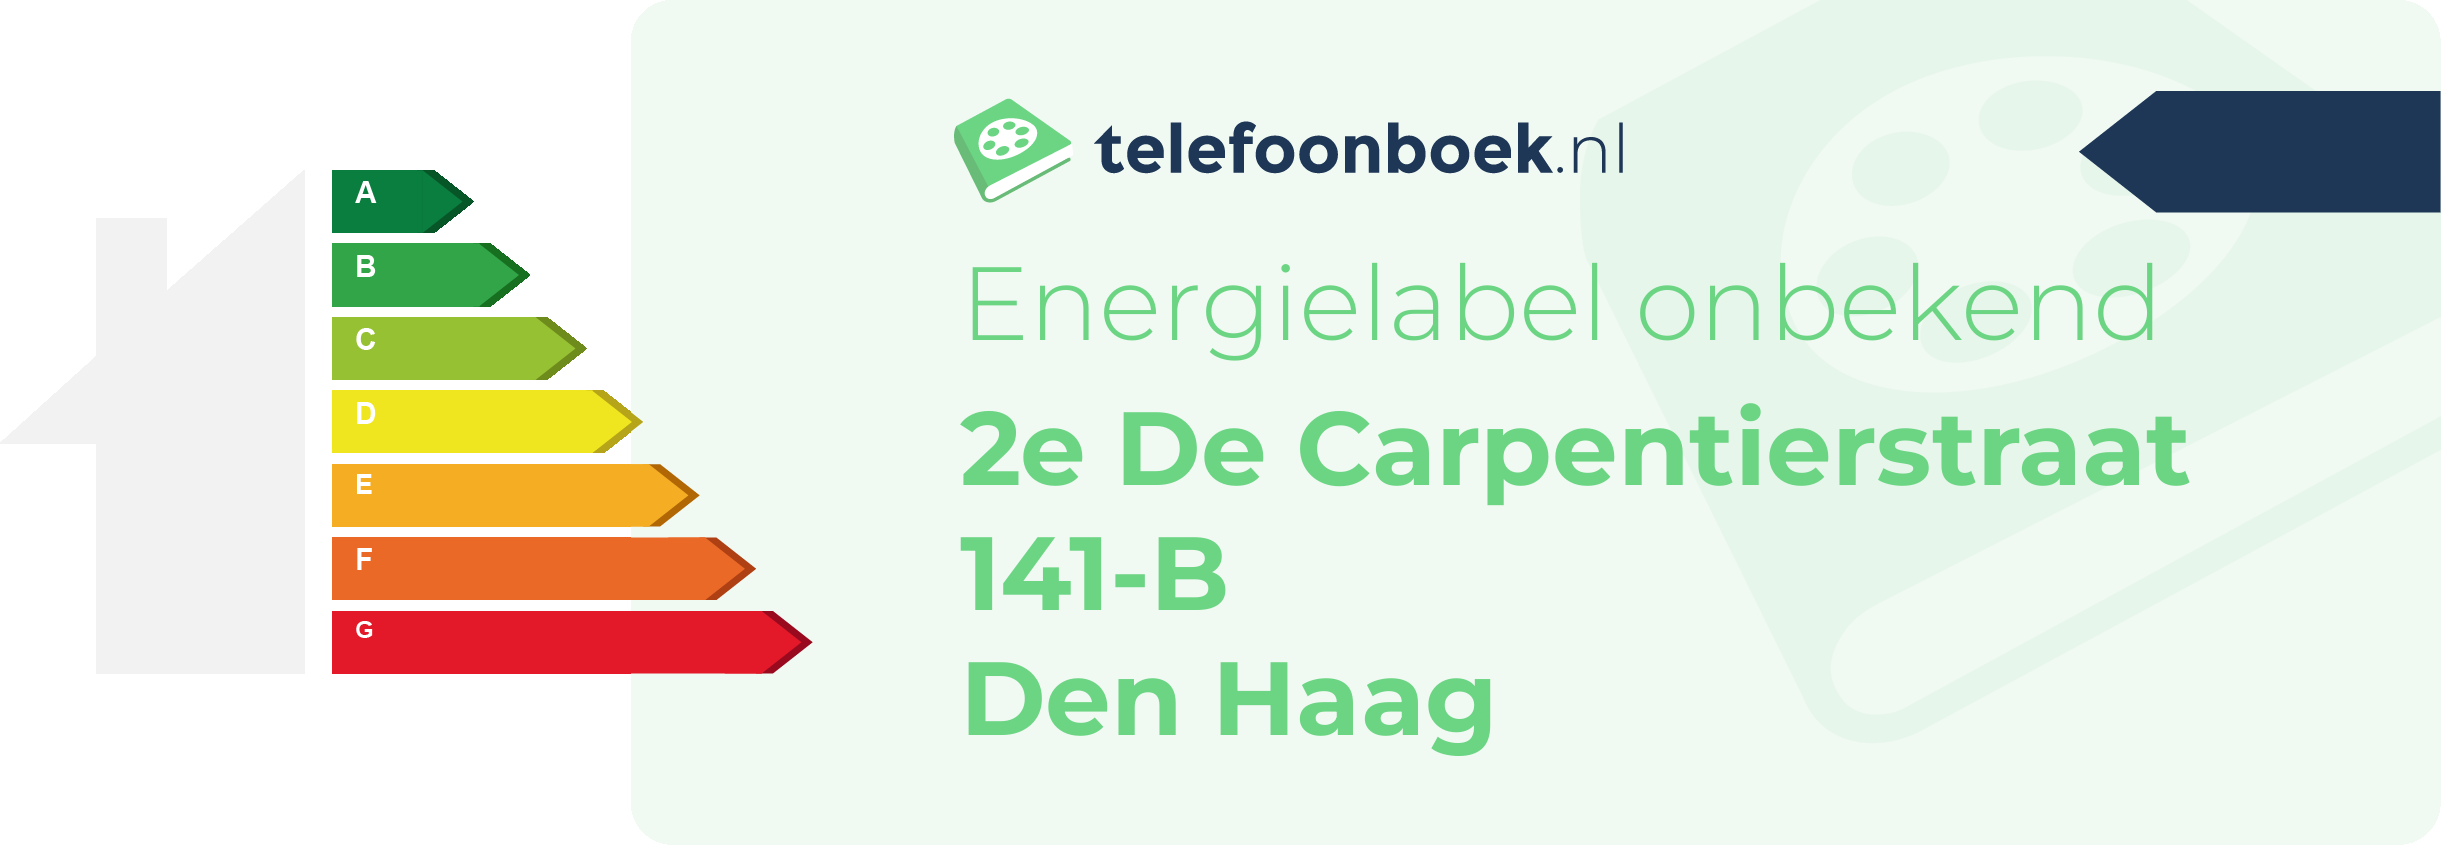 Energielabel 2e De Carpentierstraat 141-B Den Haag